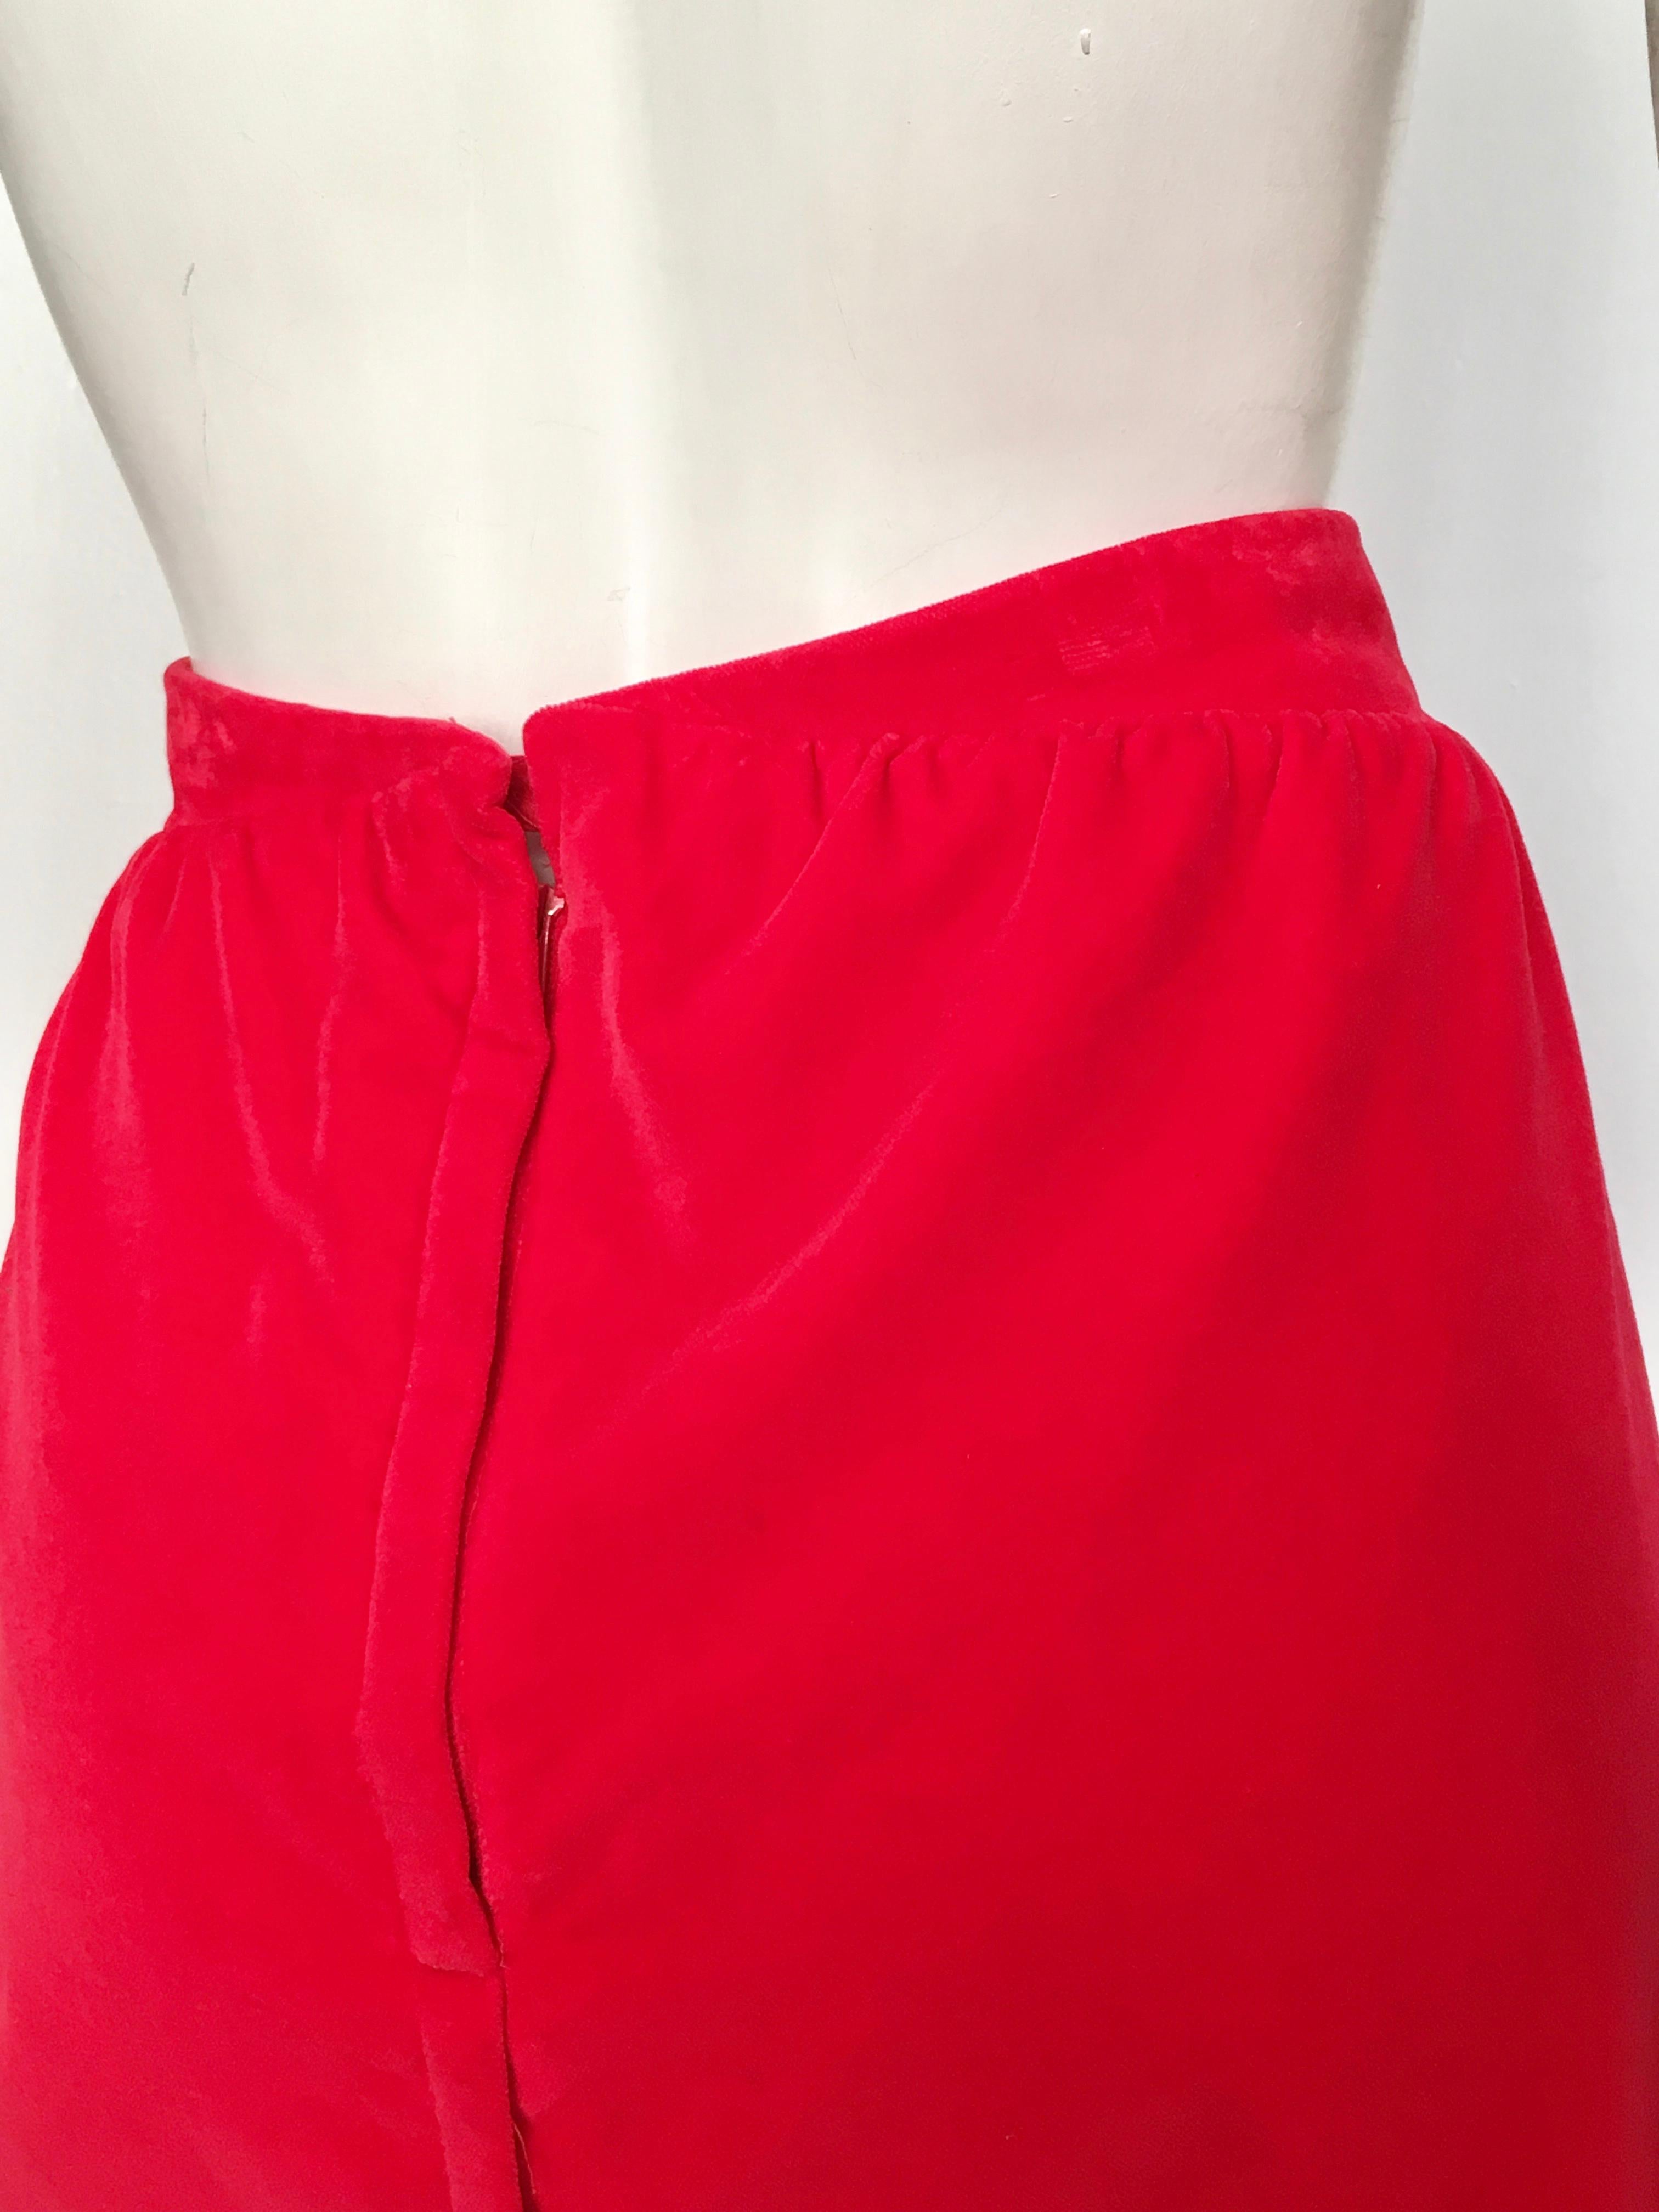 Courreges Paris 1980s Red Cotton Velvet Skirt Size 8 / 10.  For Sale 2